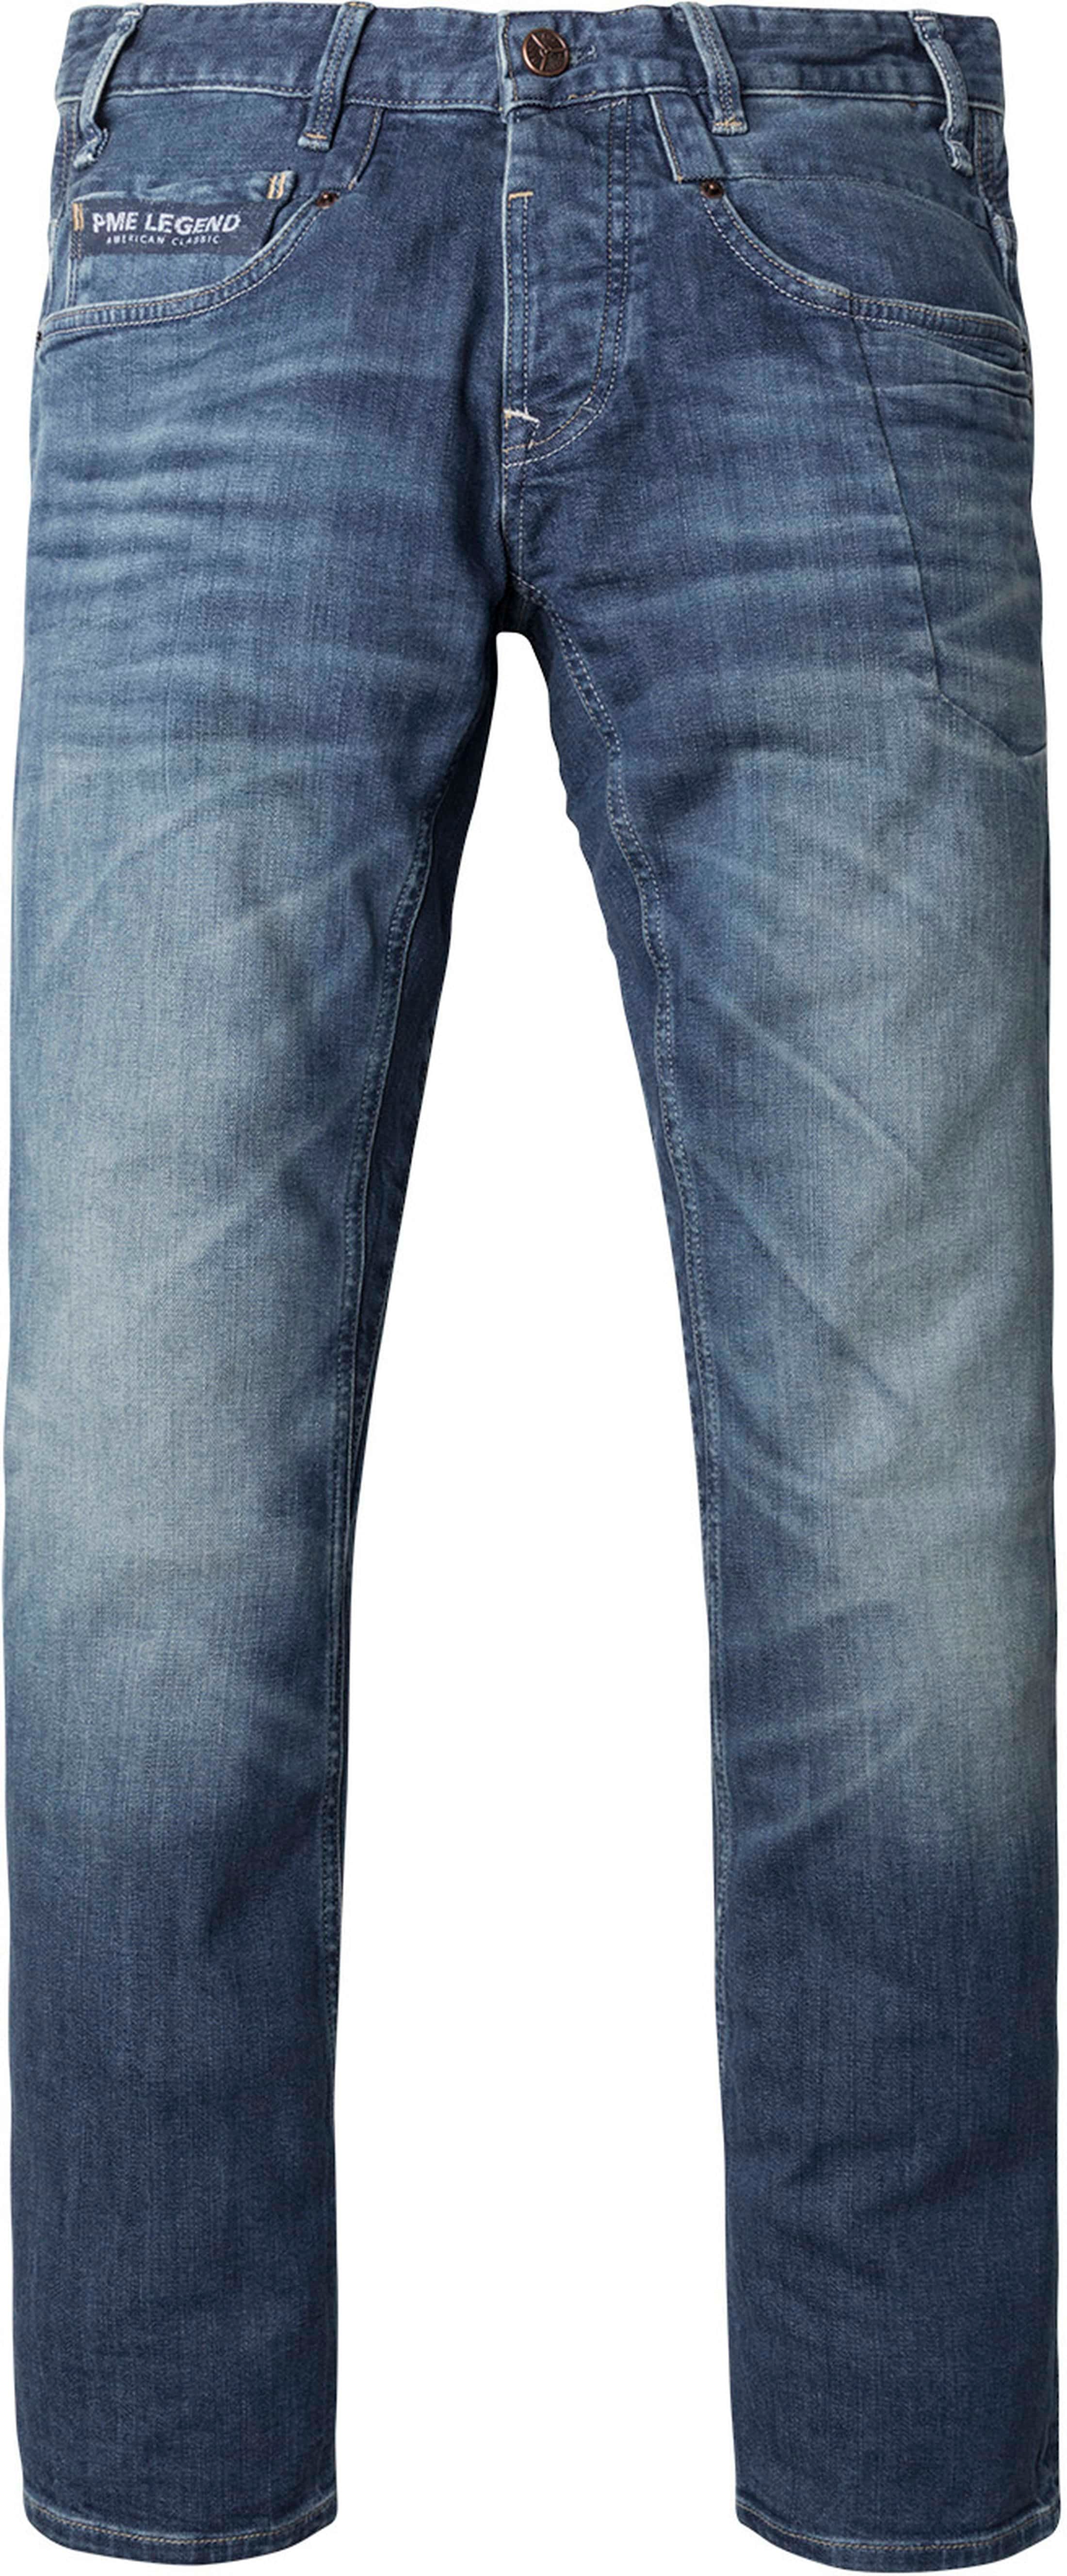 PME Legend Commander 2 Jeans Blue size W 28